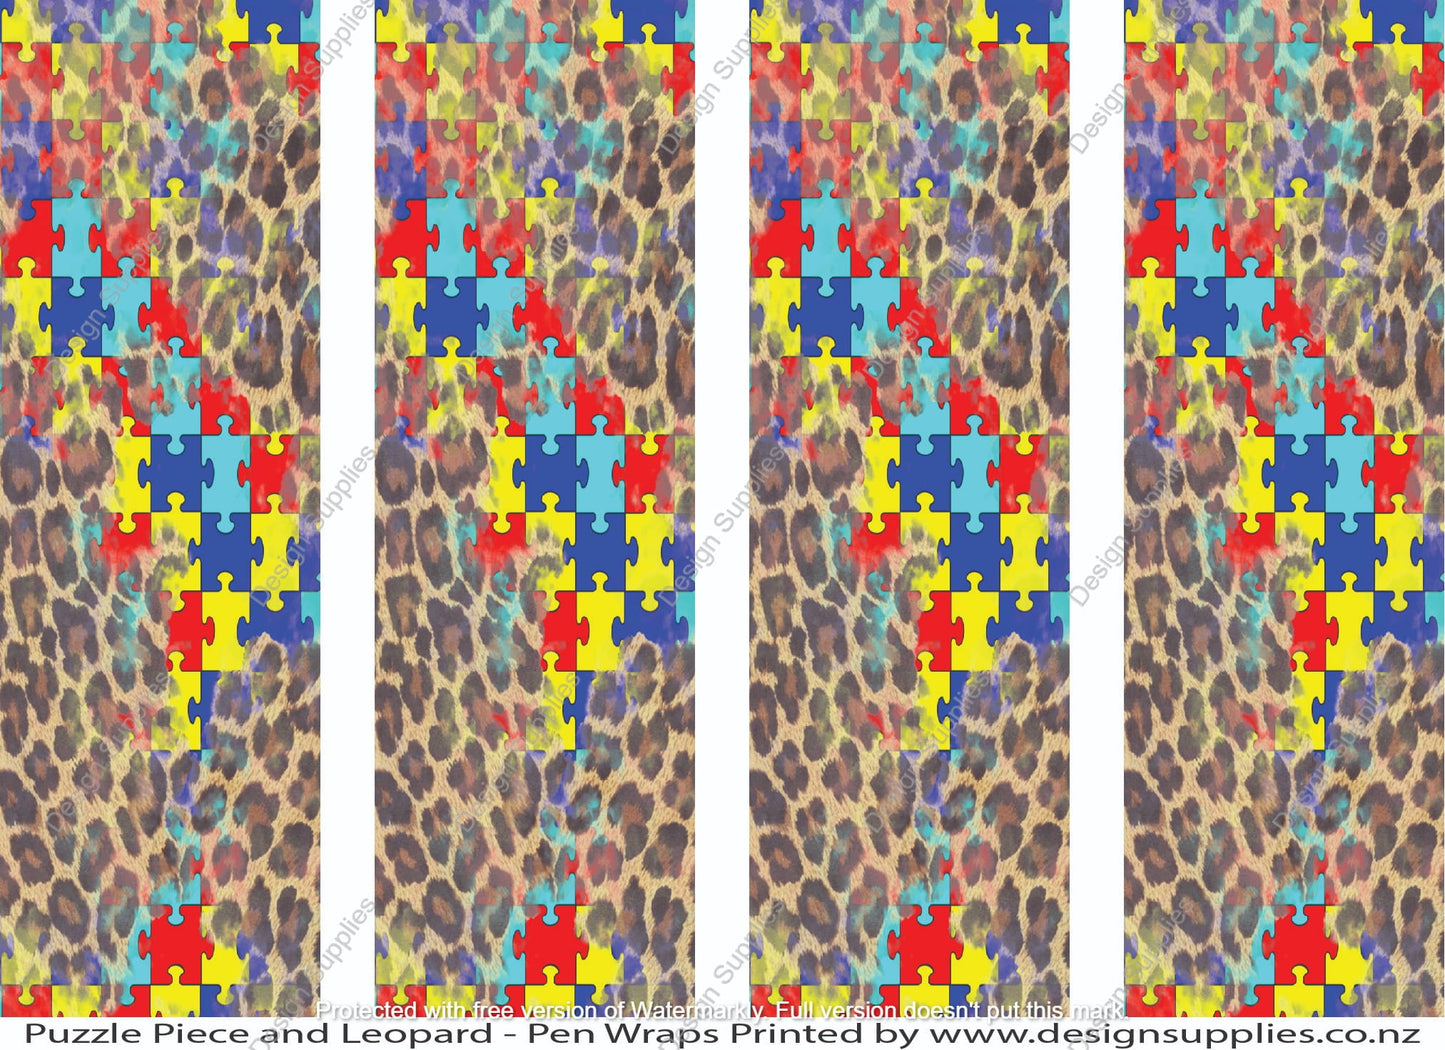 Puzzle Piece and Leopard - Pen Wraps